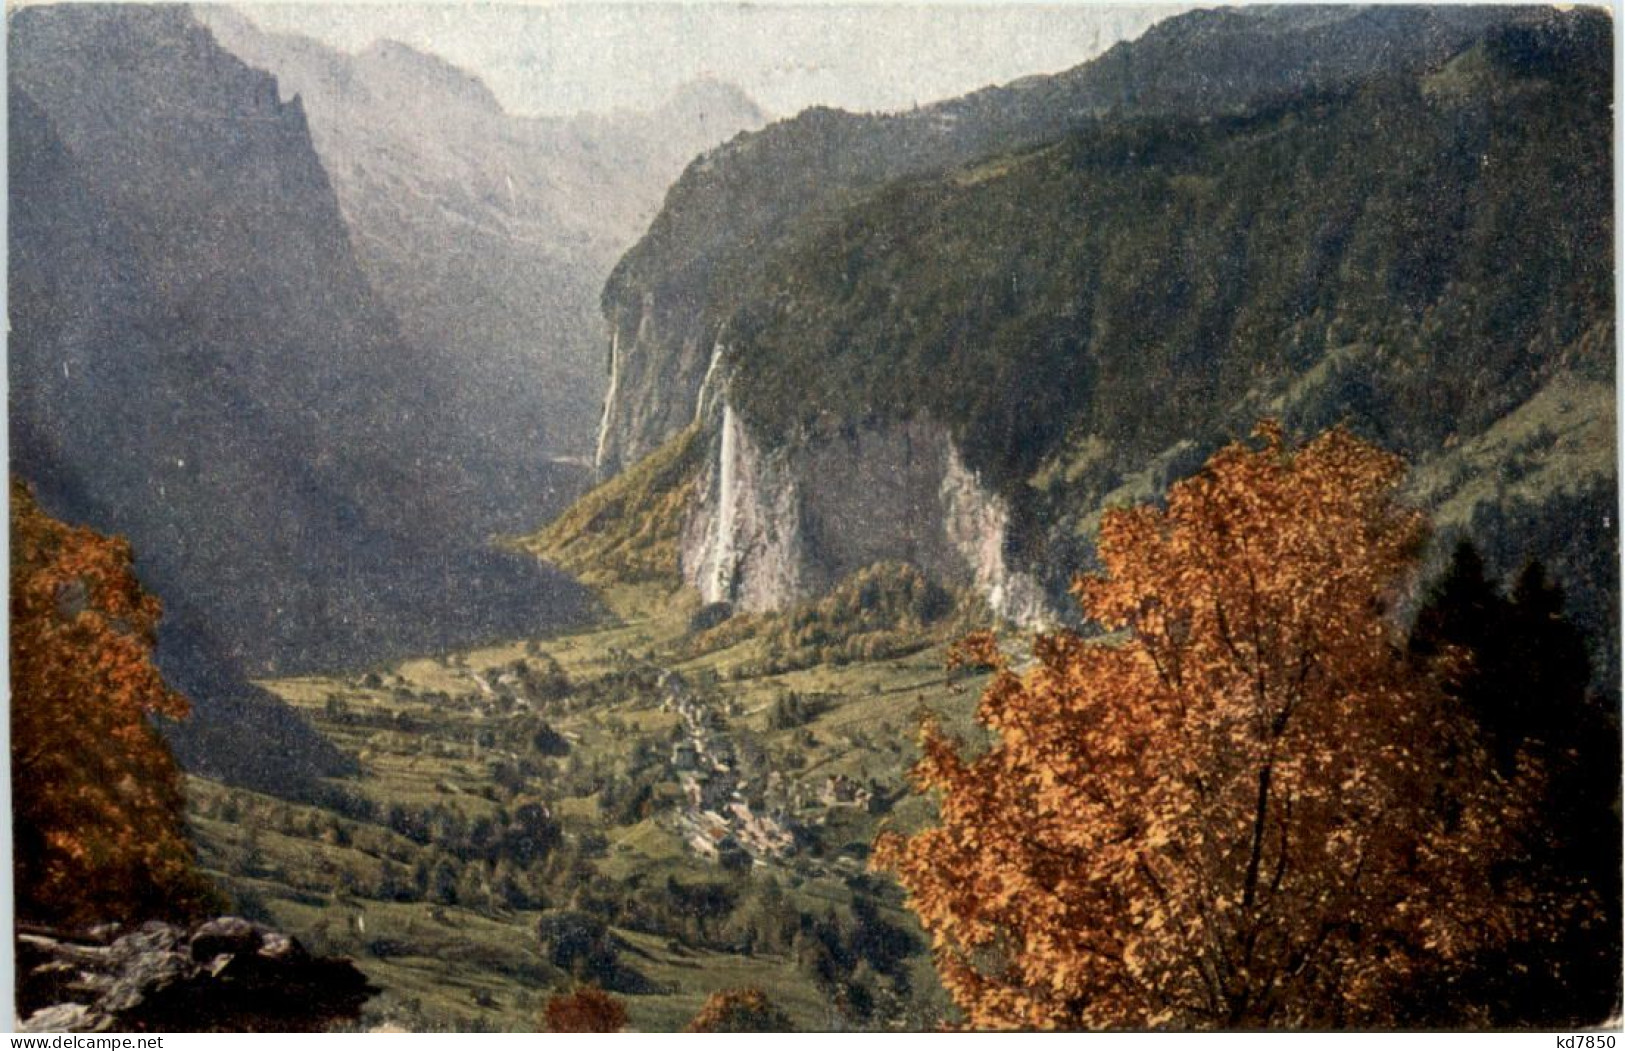 Chiemgau - Chiemgauer Alpen